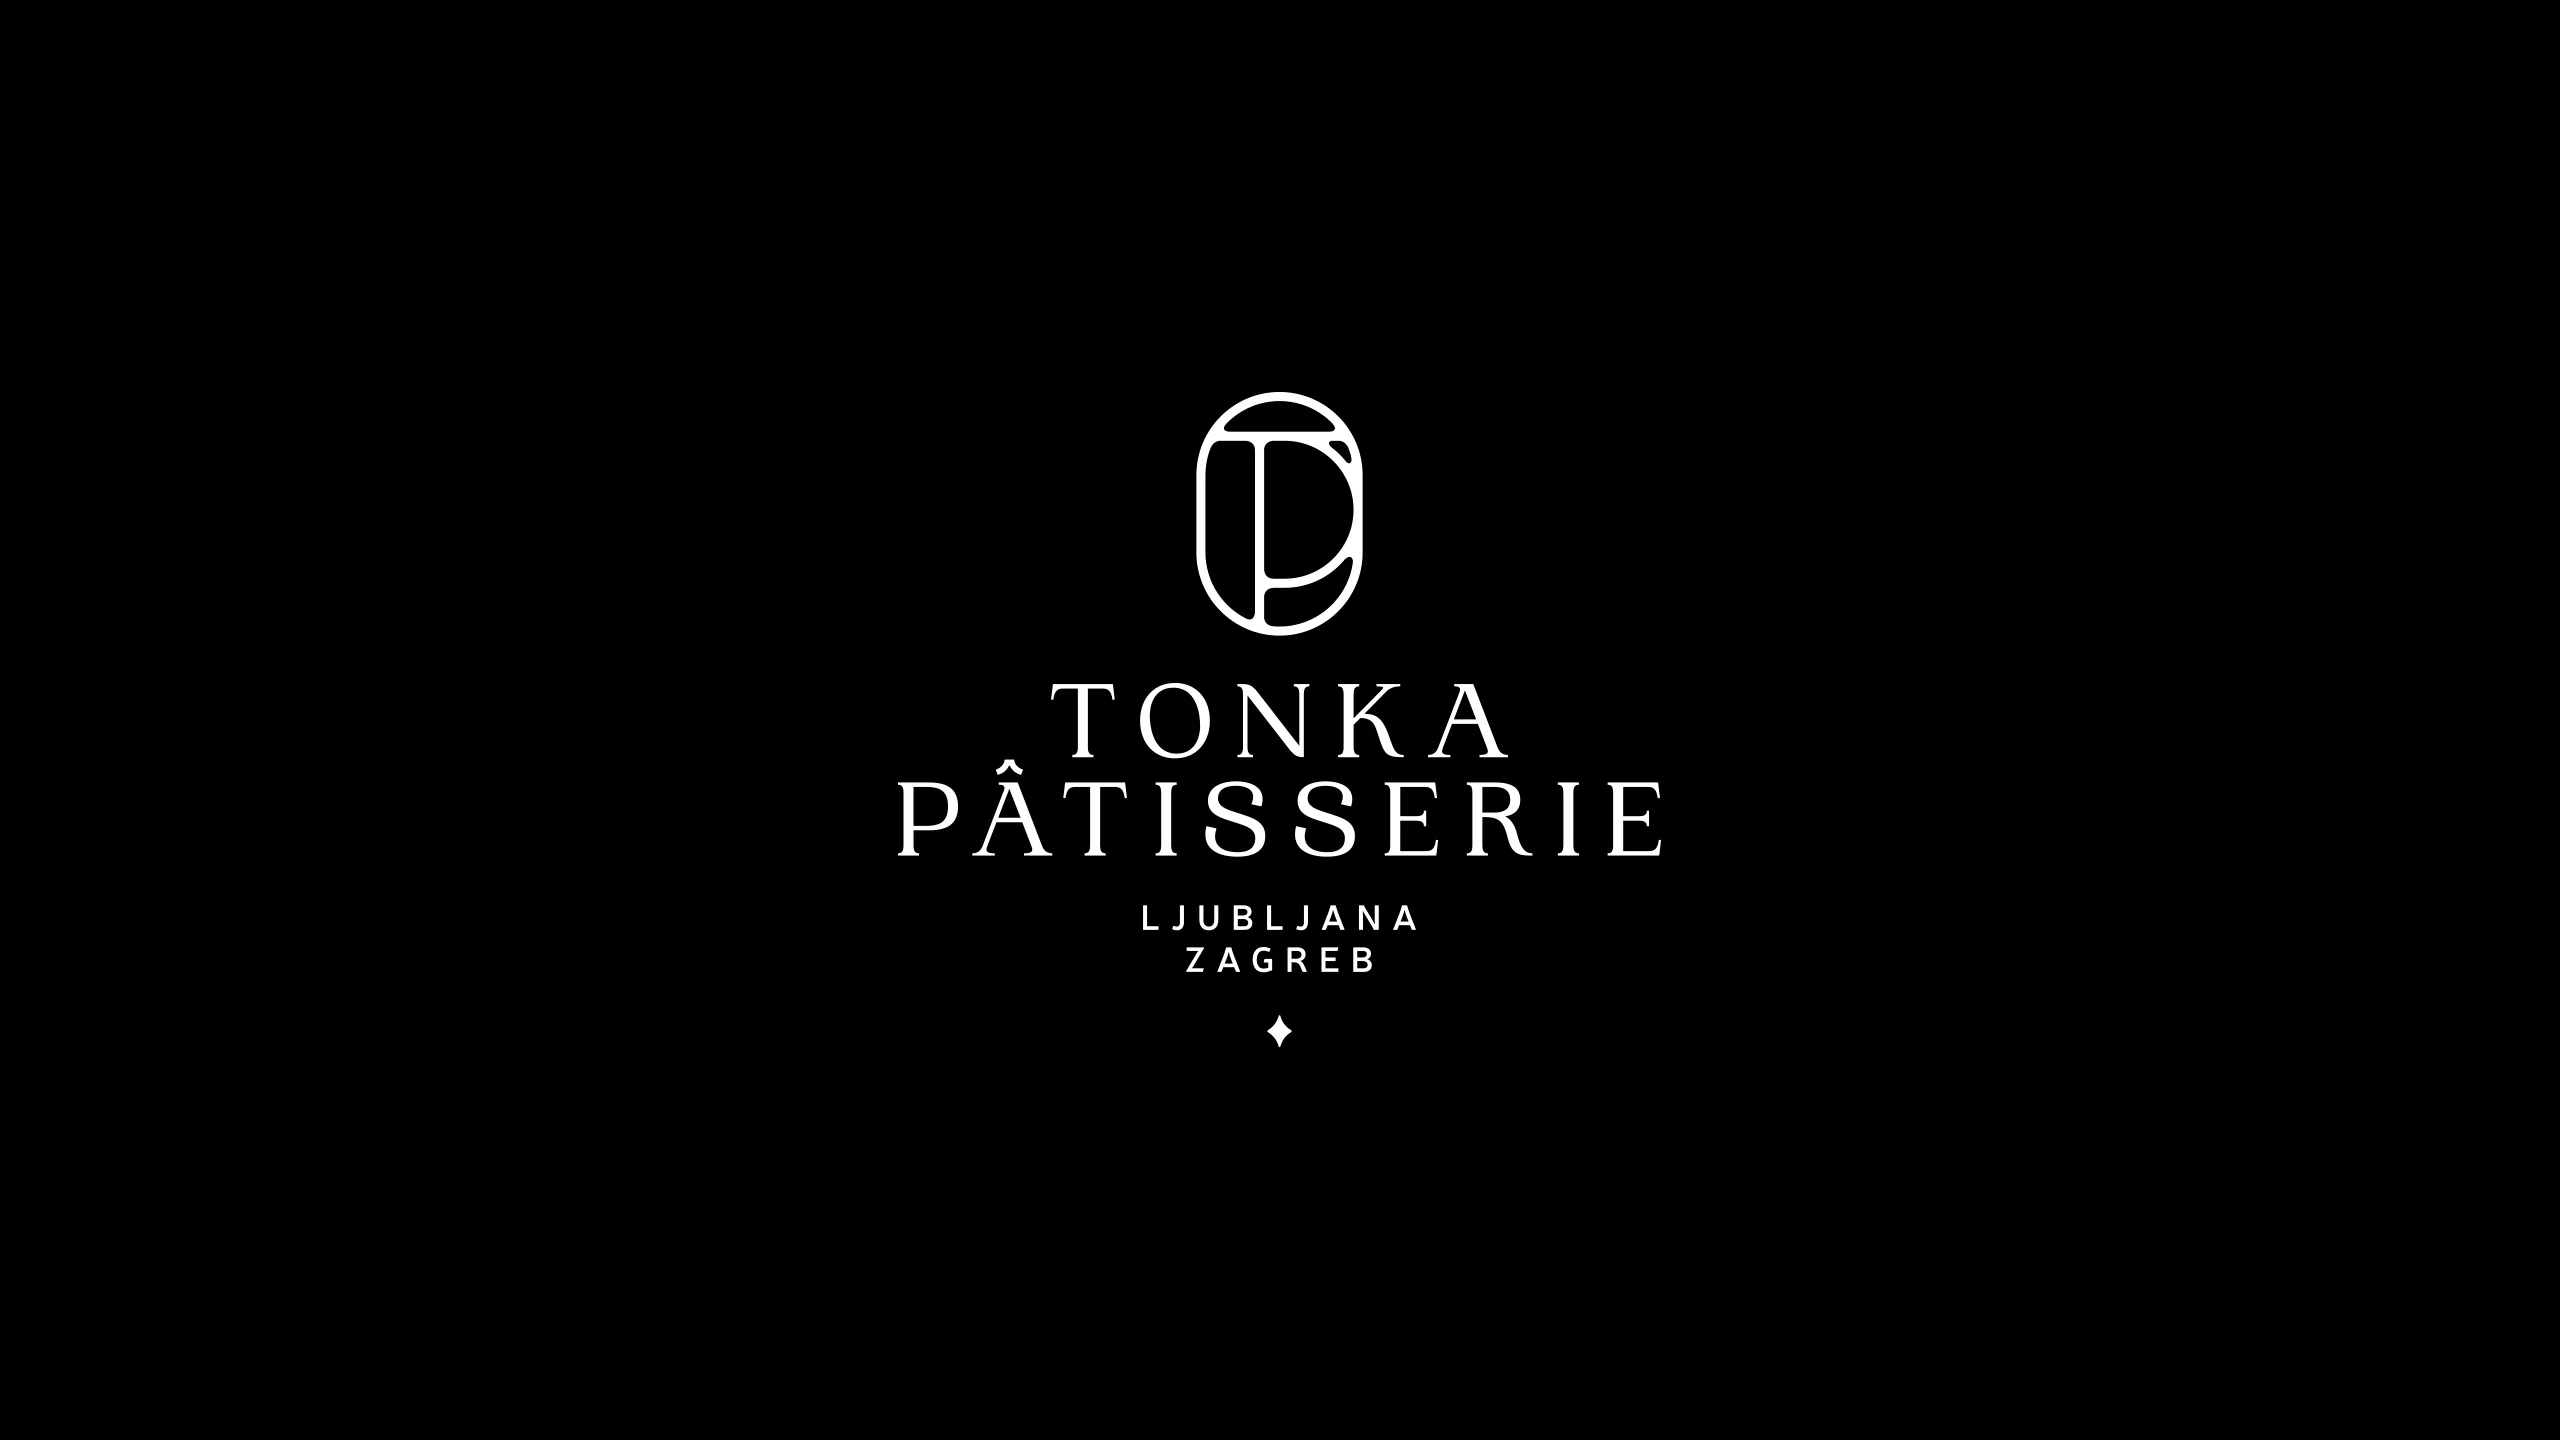 Studio-Hrastar-Logofolio-Tonka